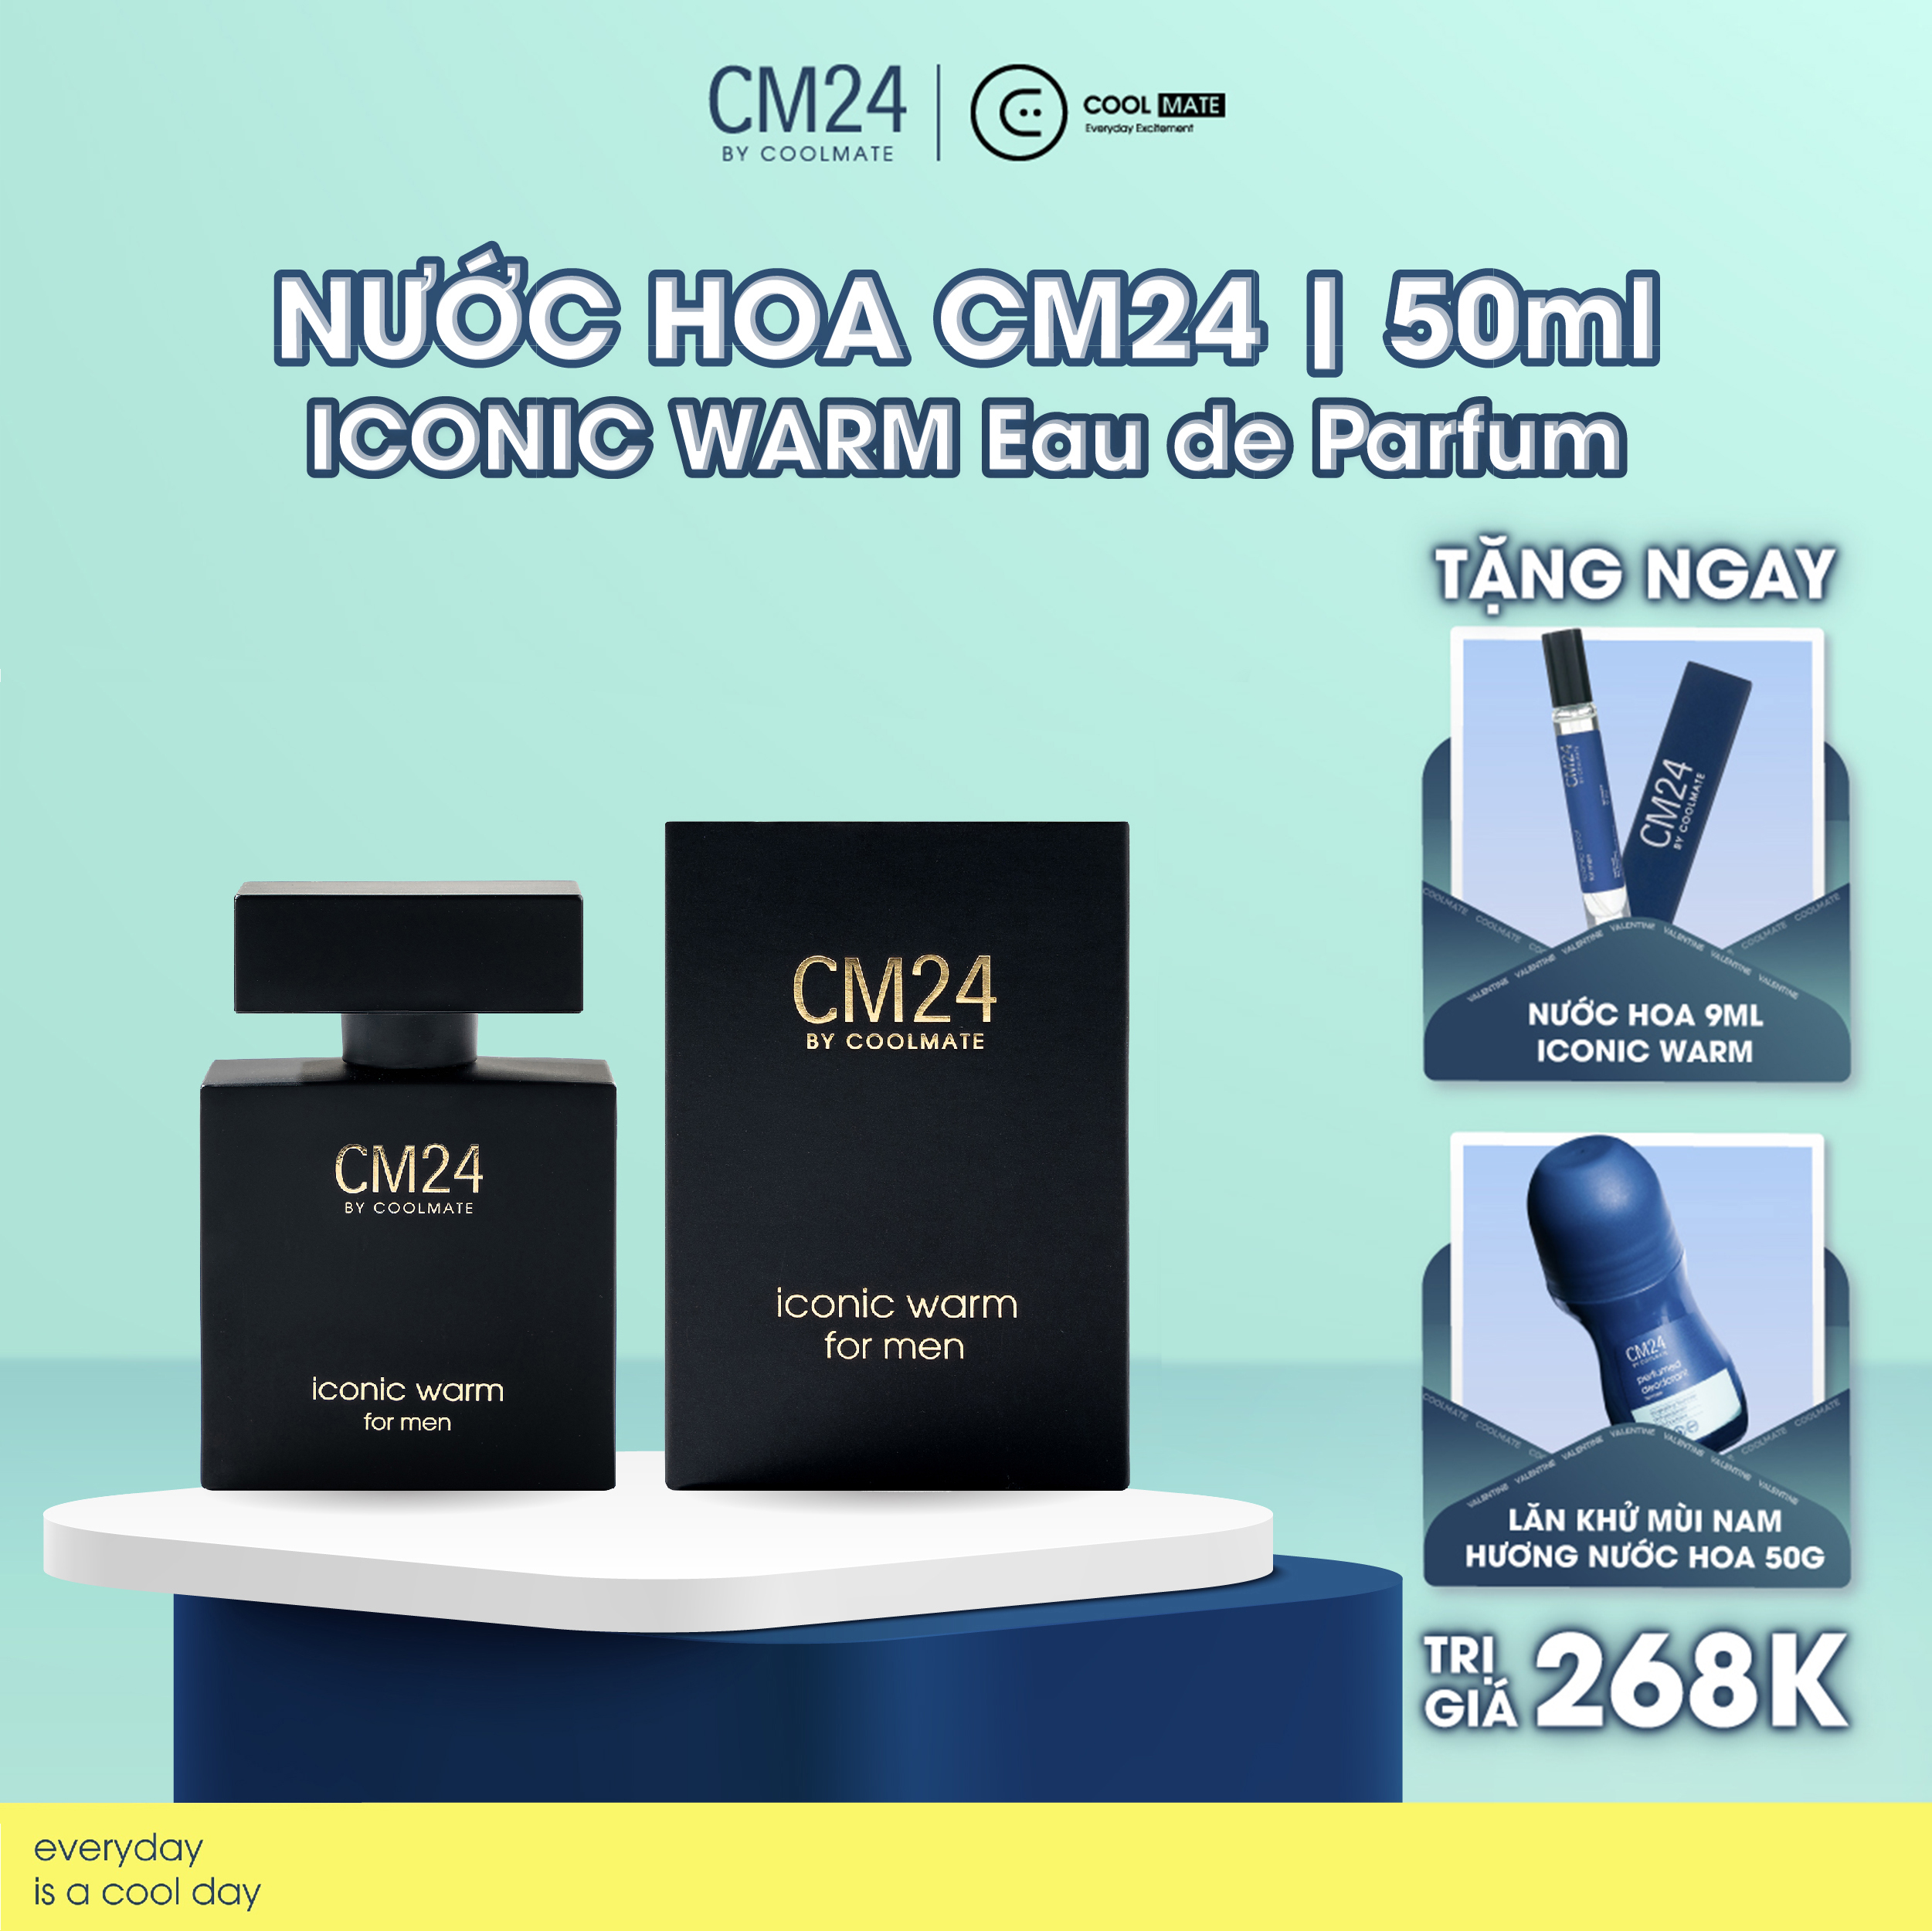 Nước hoa CM24 ICONIC WARM Eau de Parfum - 50ml - Thương hiệu CM24